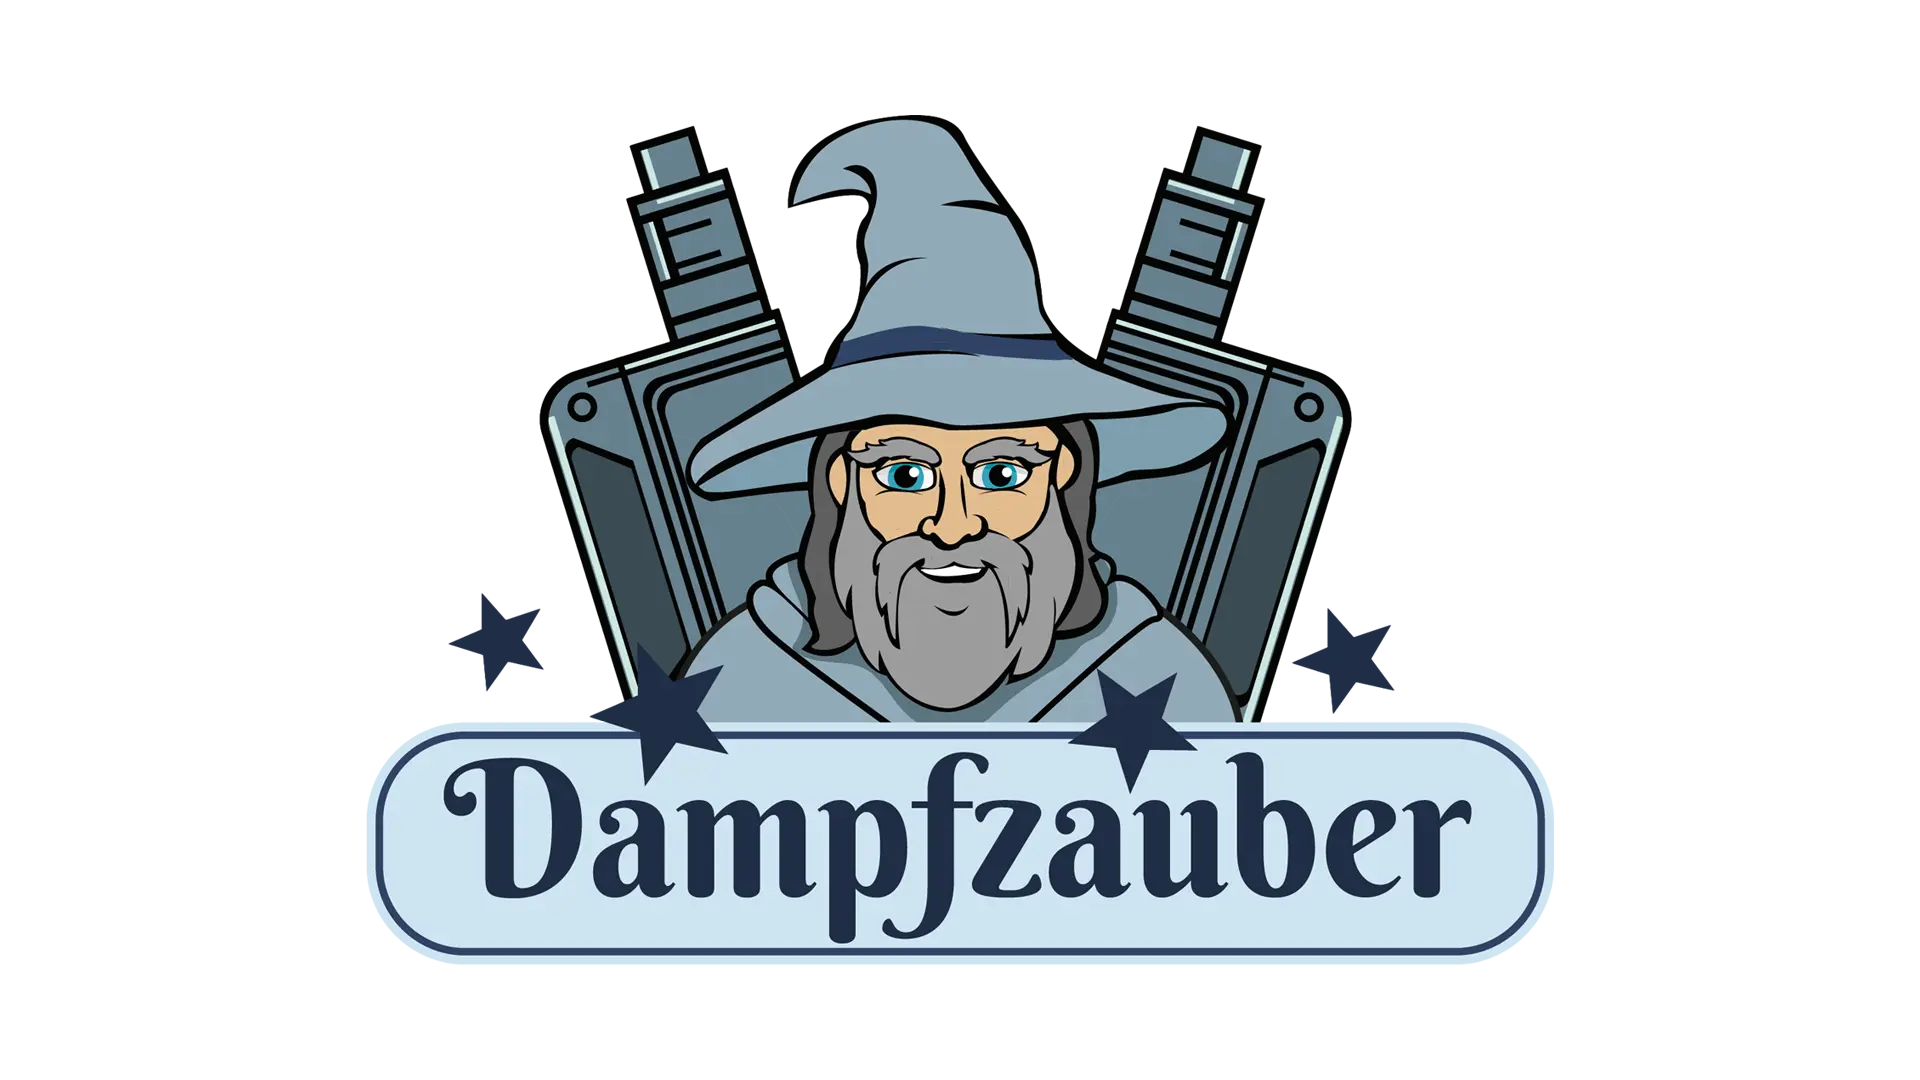 Dampfzauber GmbH